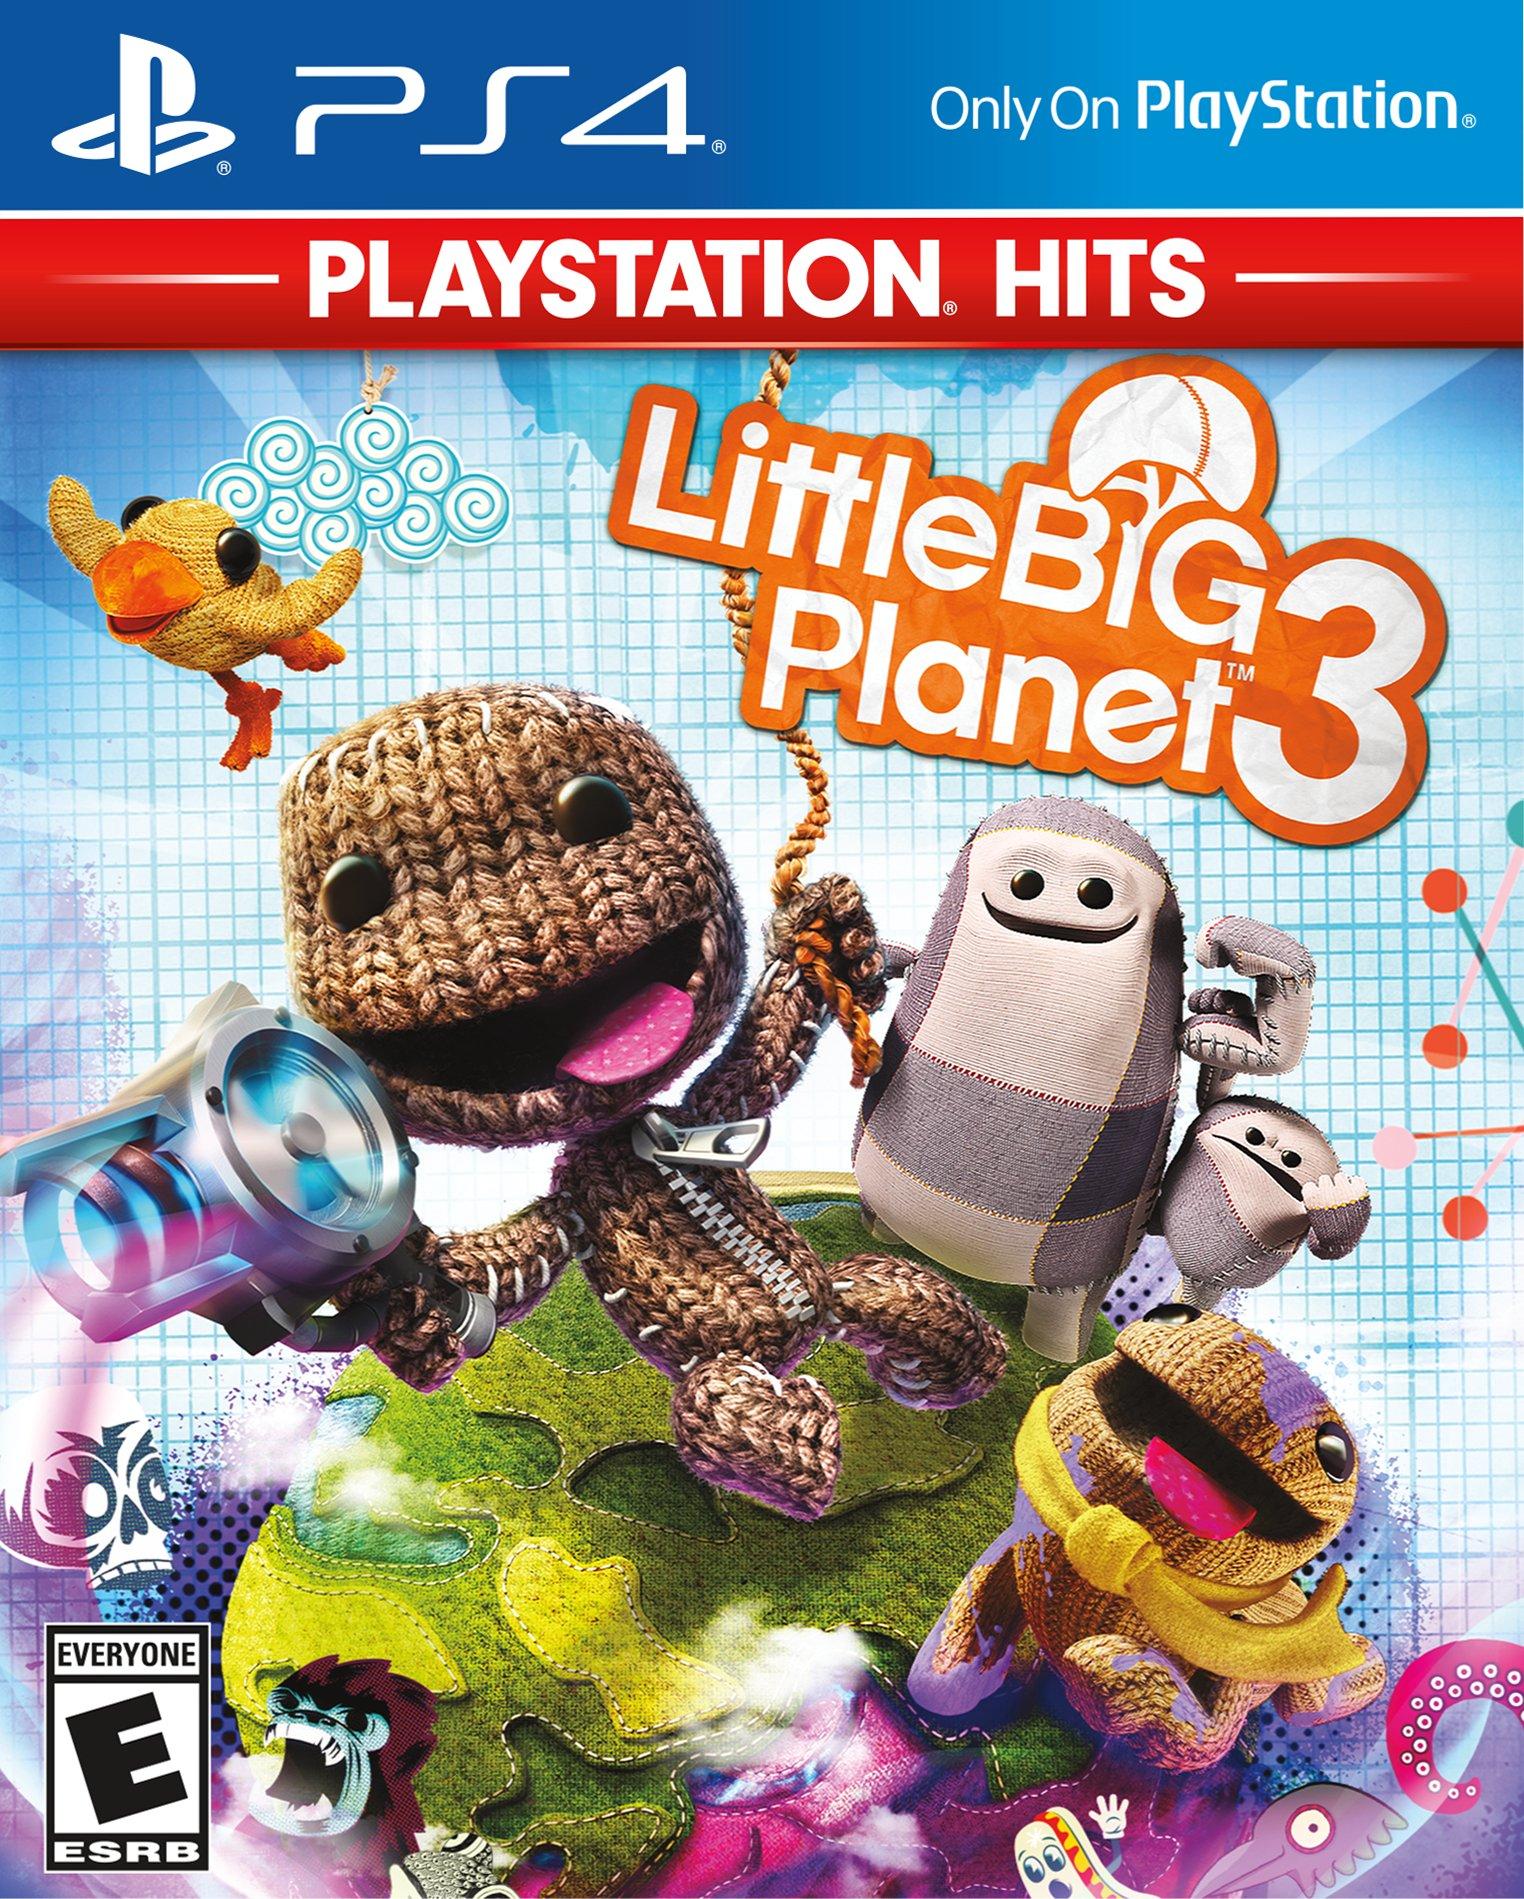 LittleBigPlanet 3 - PlayStation 4 | PlayStation 4 | GameStop